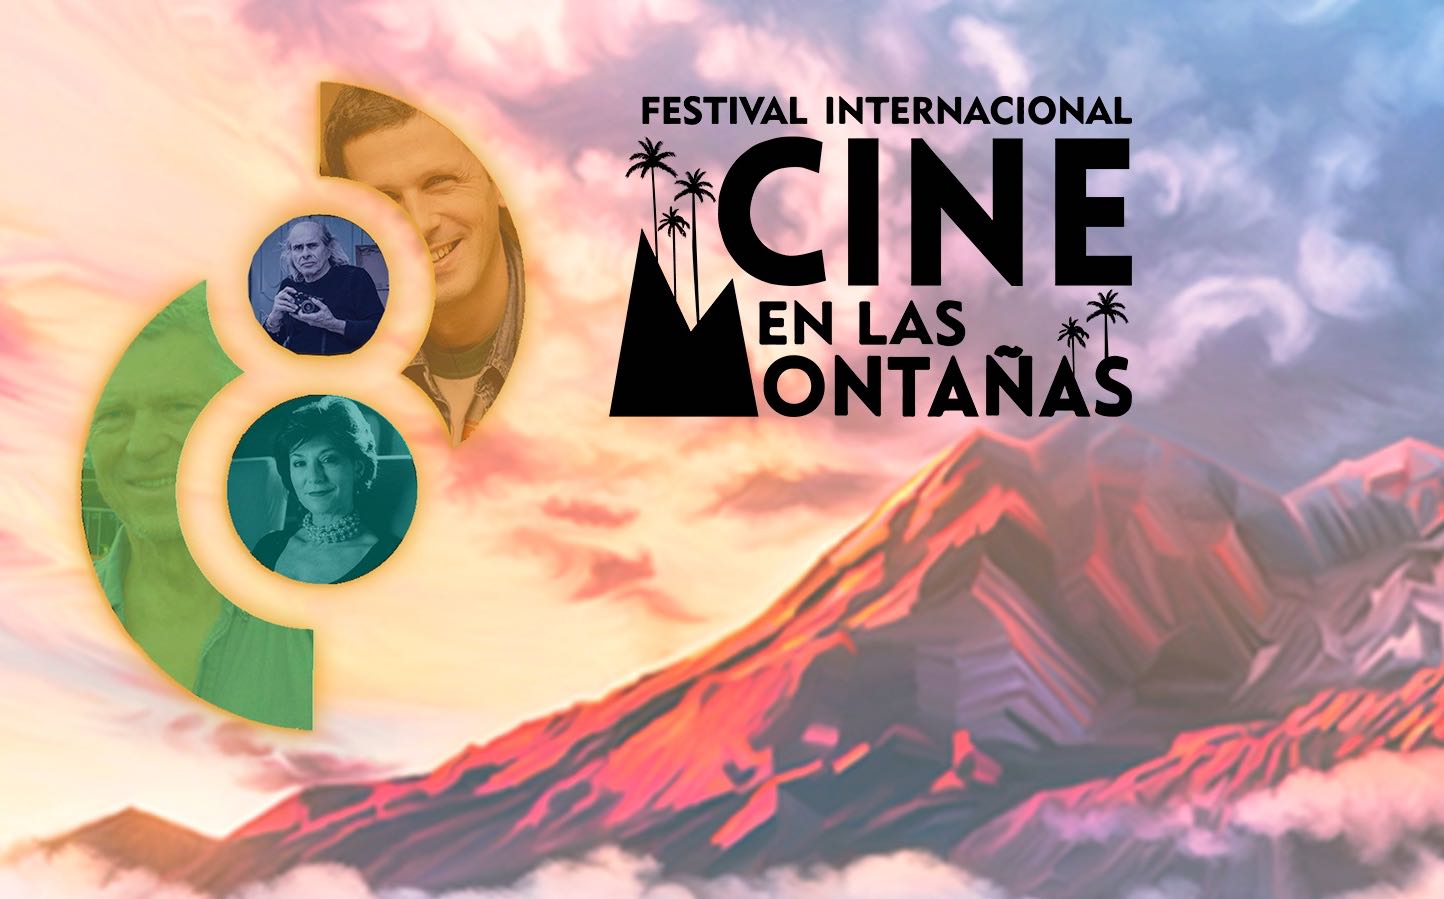 8 Festival internacional Cine en las Montañas 